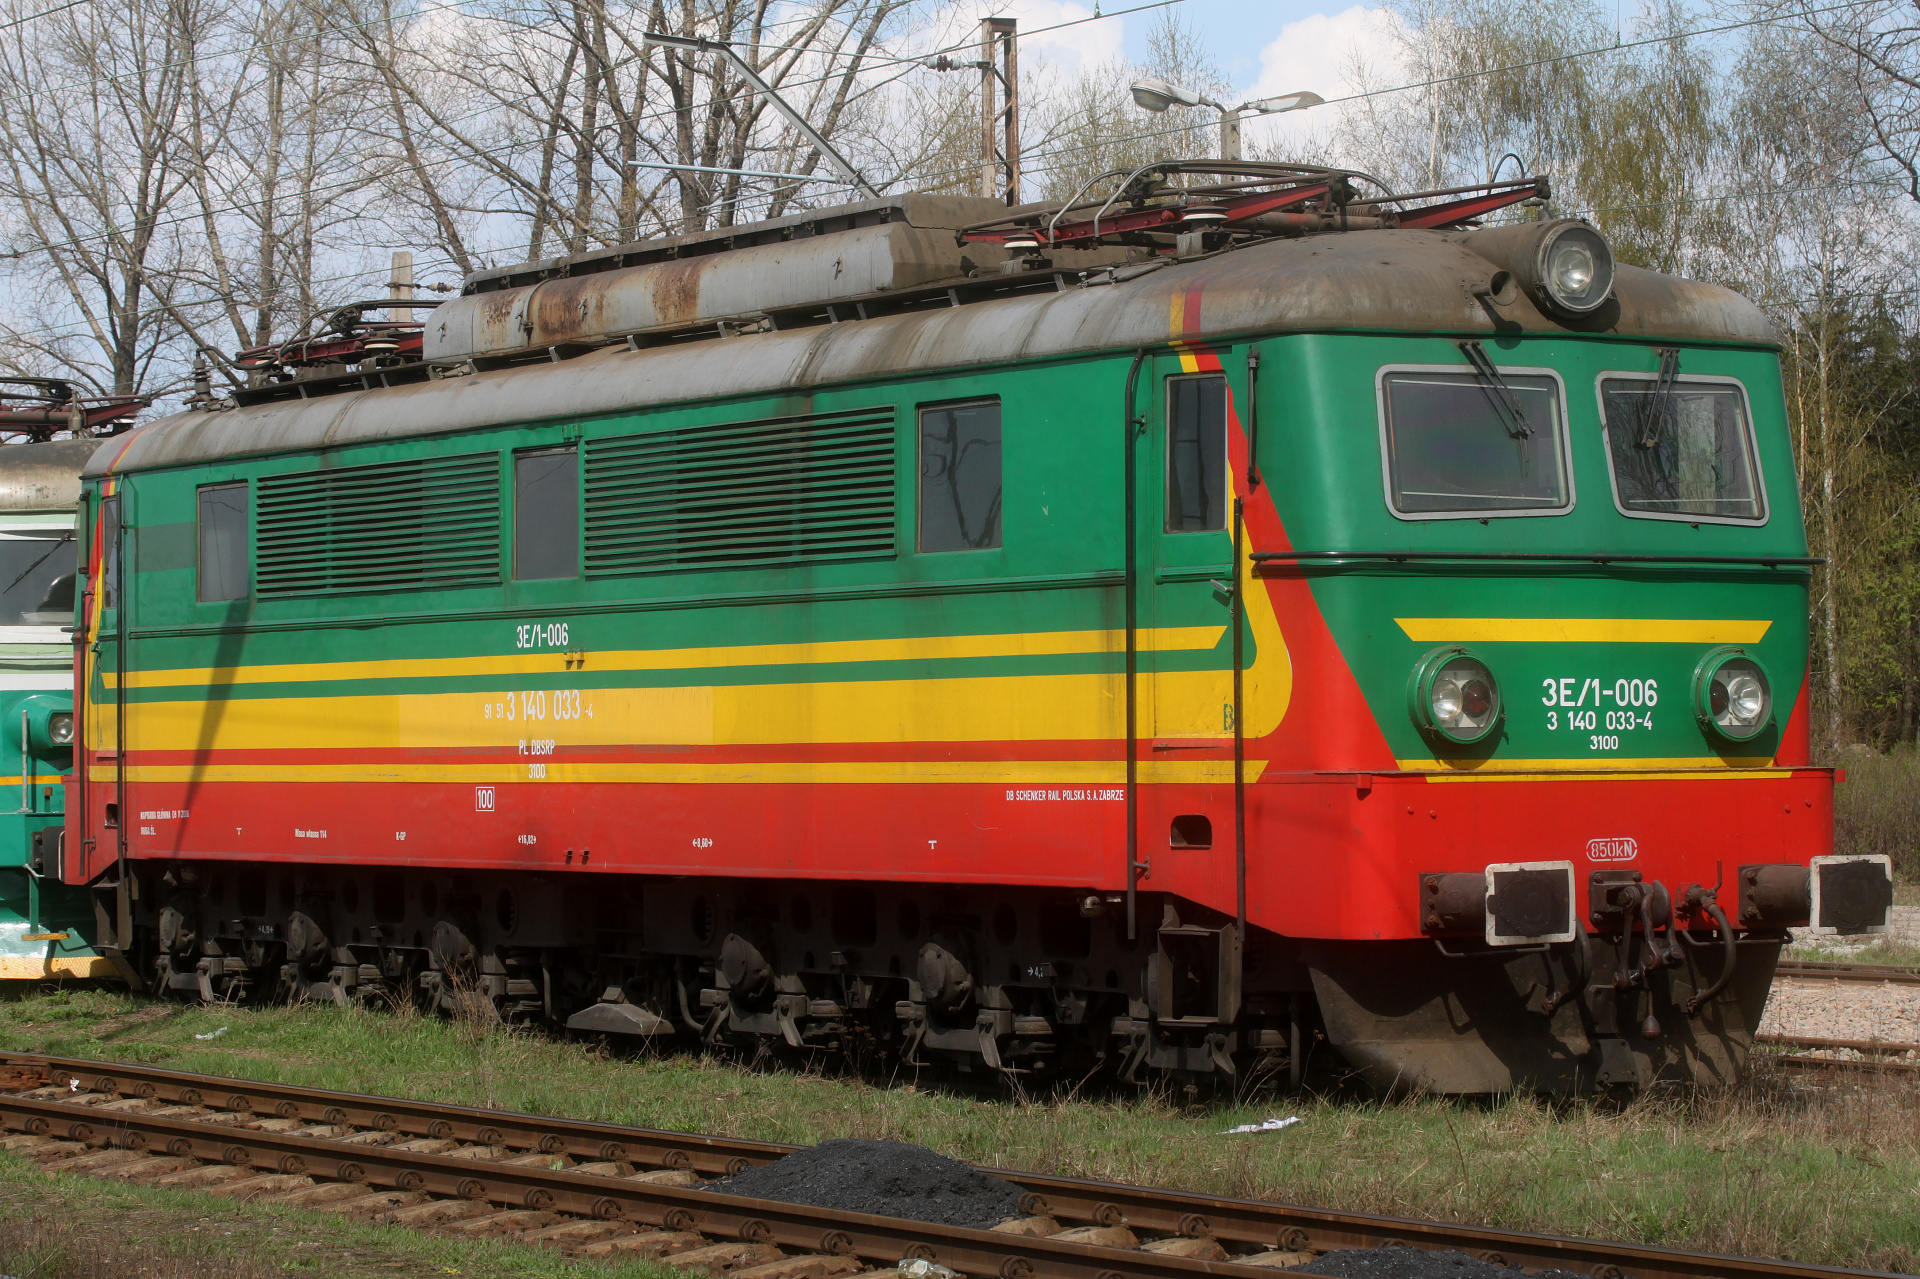 Pafawag 3E/1-006 (Pojazdy » Pociągi i lokomotywy)